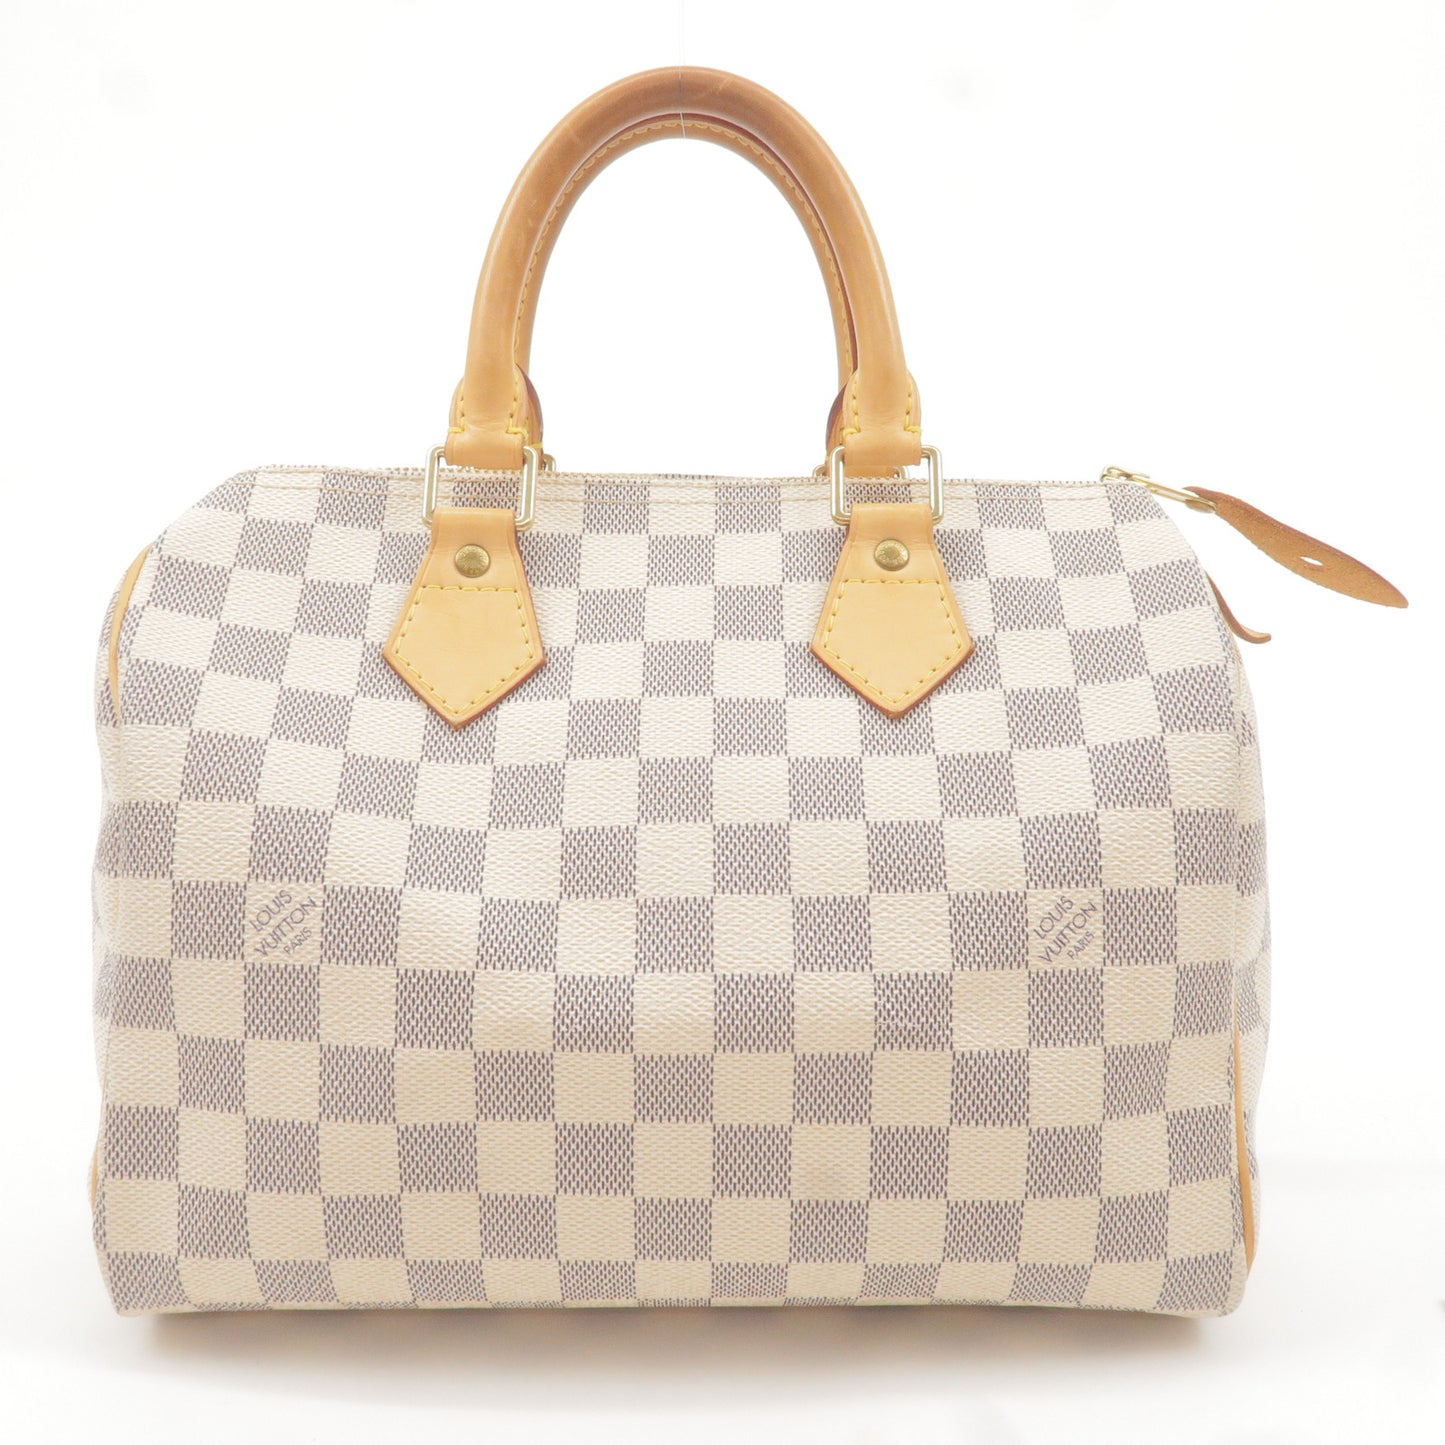 White Louis Vuitton Damier Azur Speedy 25 Boston Bag